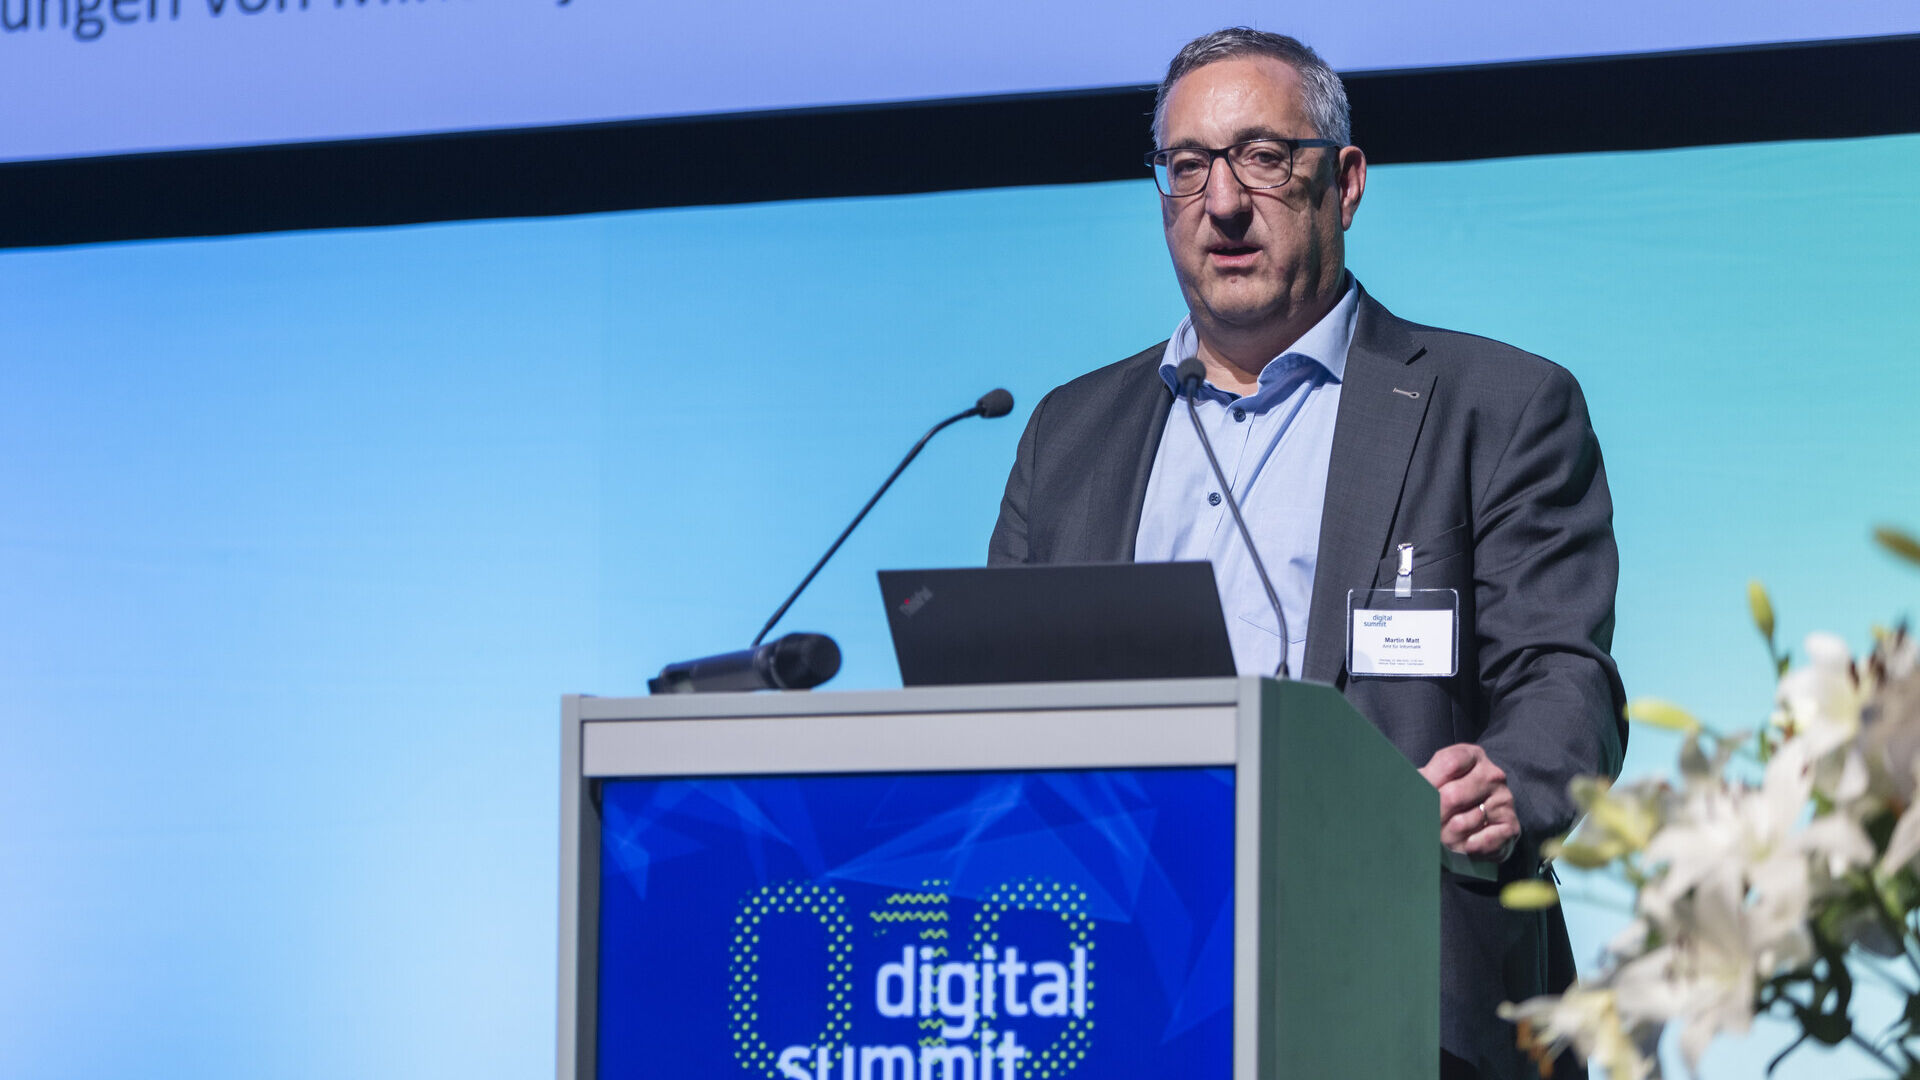 Digitalni samit 2023: Martin Matt